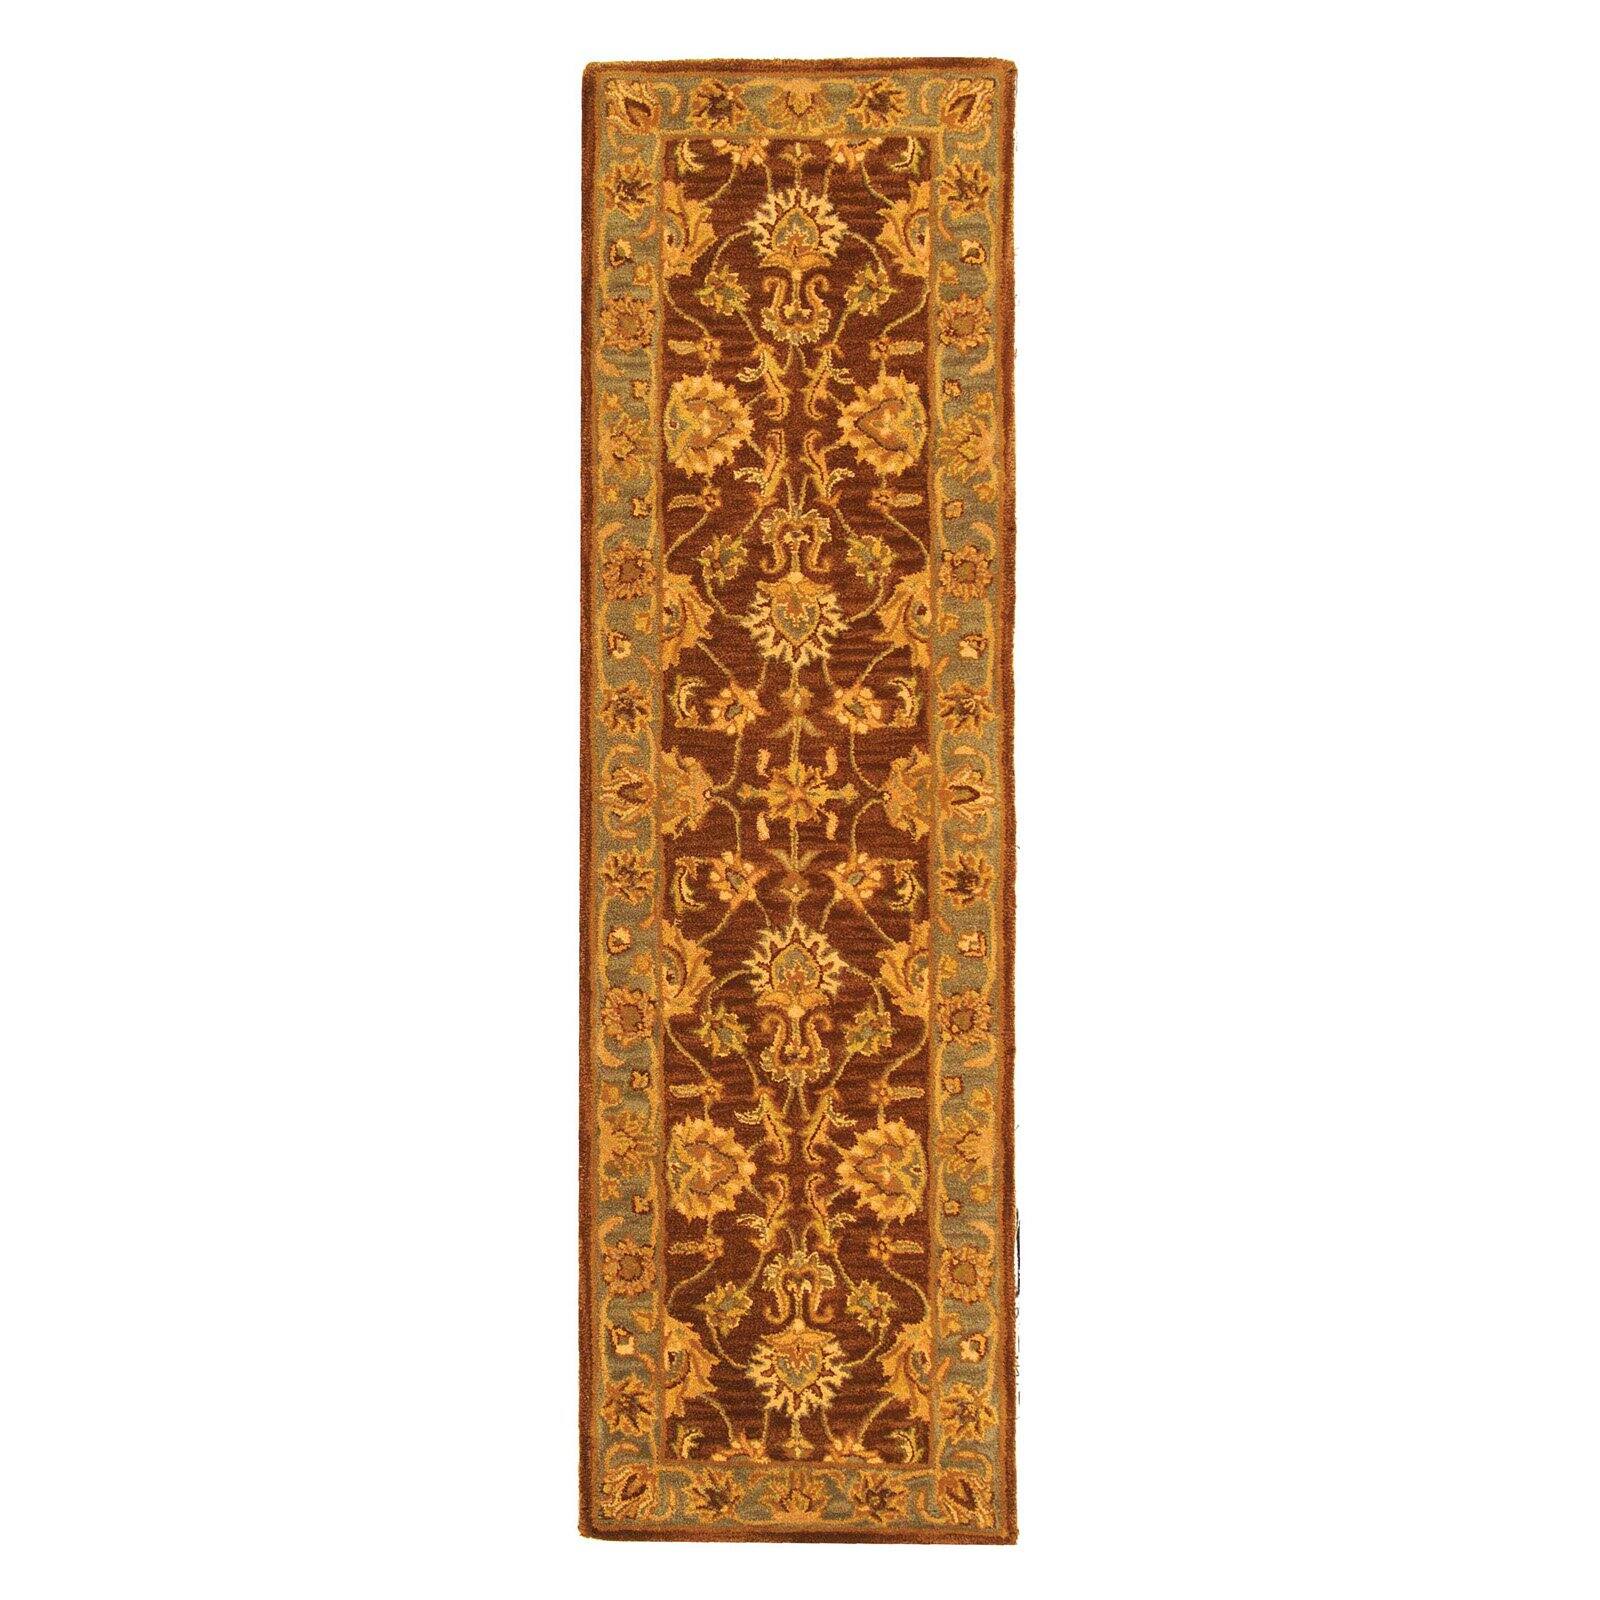 SAFAVIEH Heritage Regis Traditional Wool Area Rug, Brown/Blue, 7'6" x 9'6" - image 3 of 9